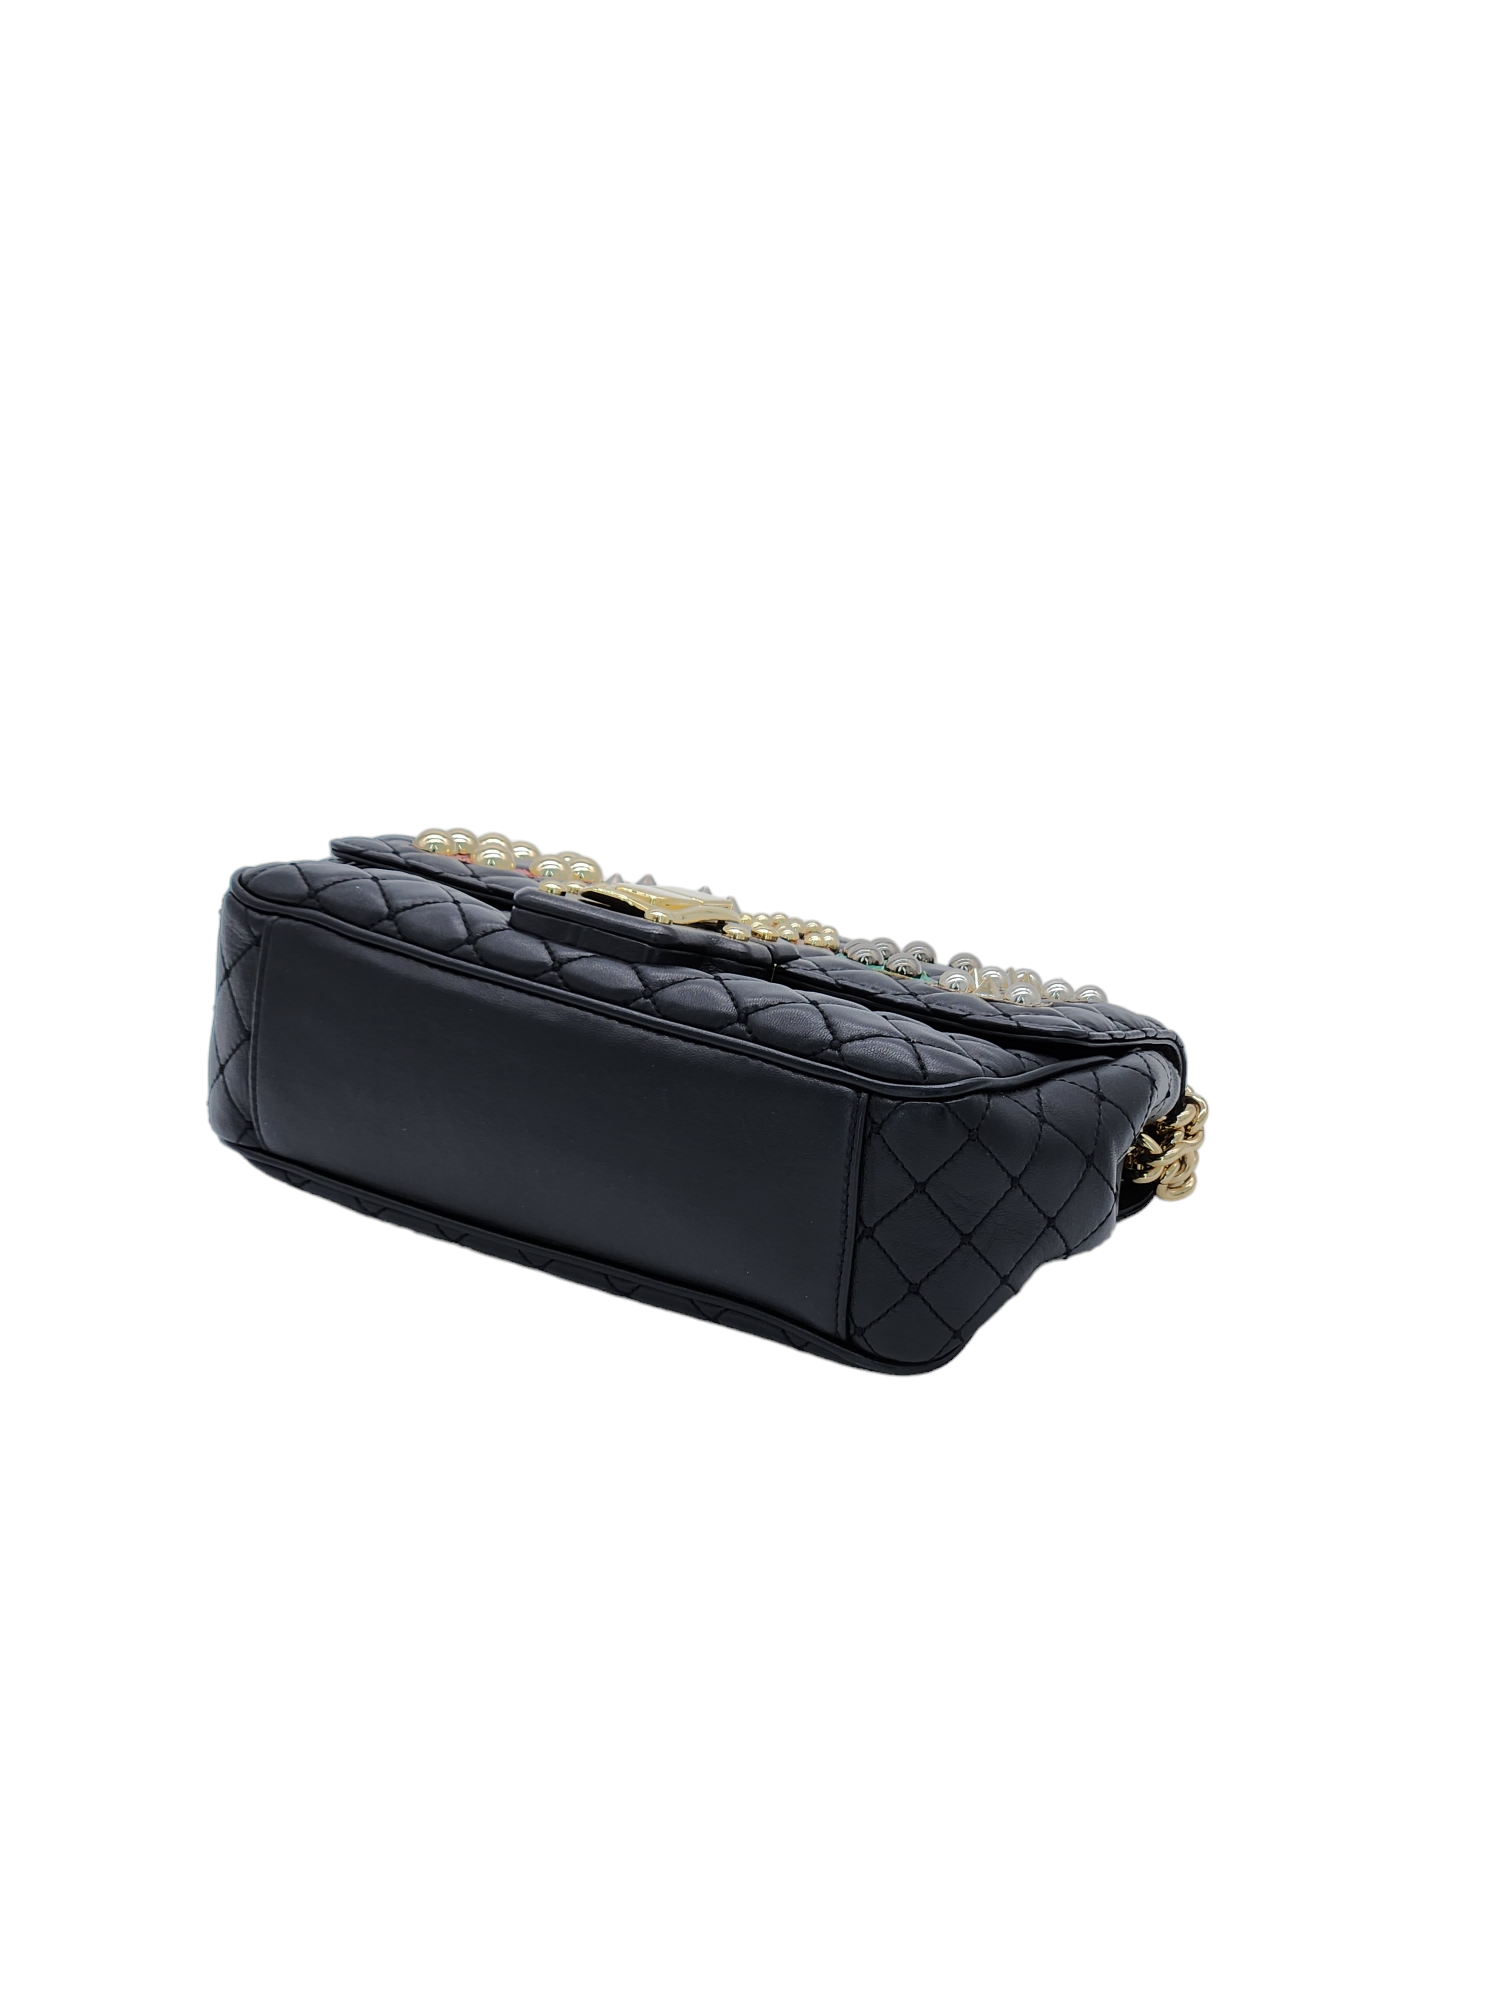 Dolce Gabbana Black Lucia Dolce Embellished Studded Leather Shoulder Bag